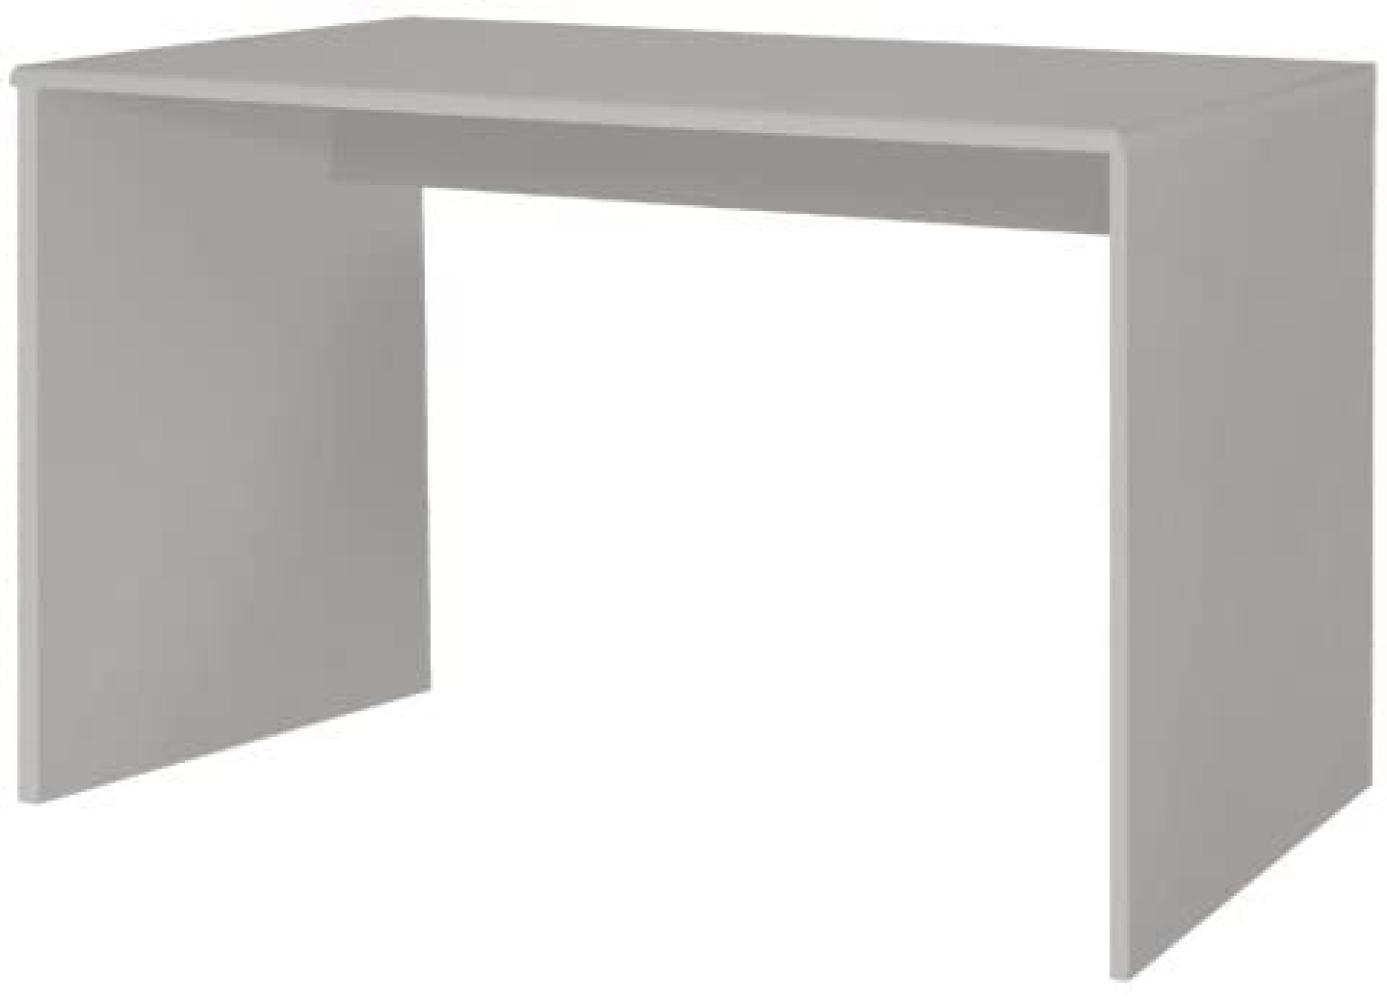 Phoenix Schreibtisch, Automeallic-Lackierung Miami, Grau Metallic, 120 x 74 x 65 cm Bild 1